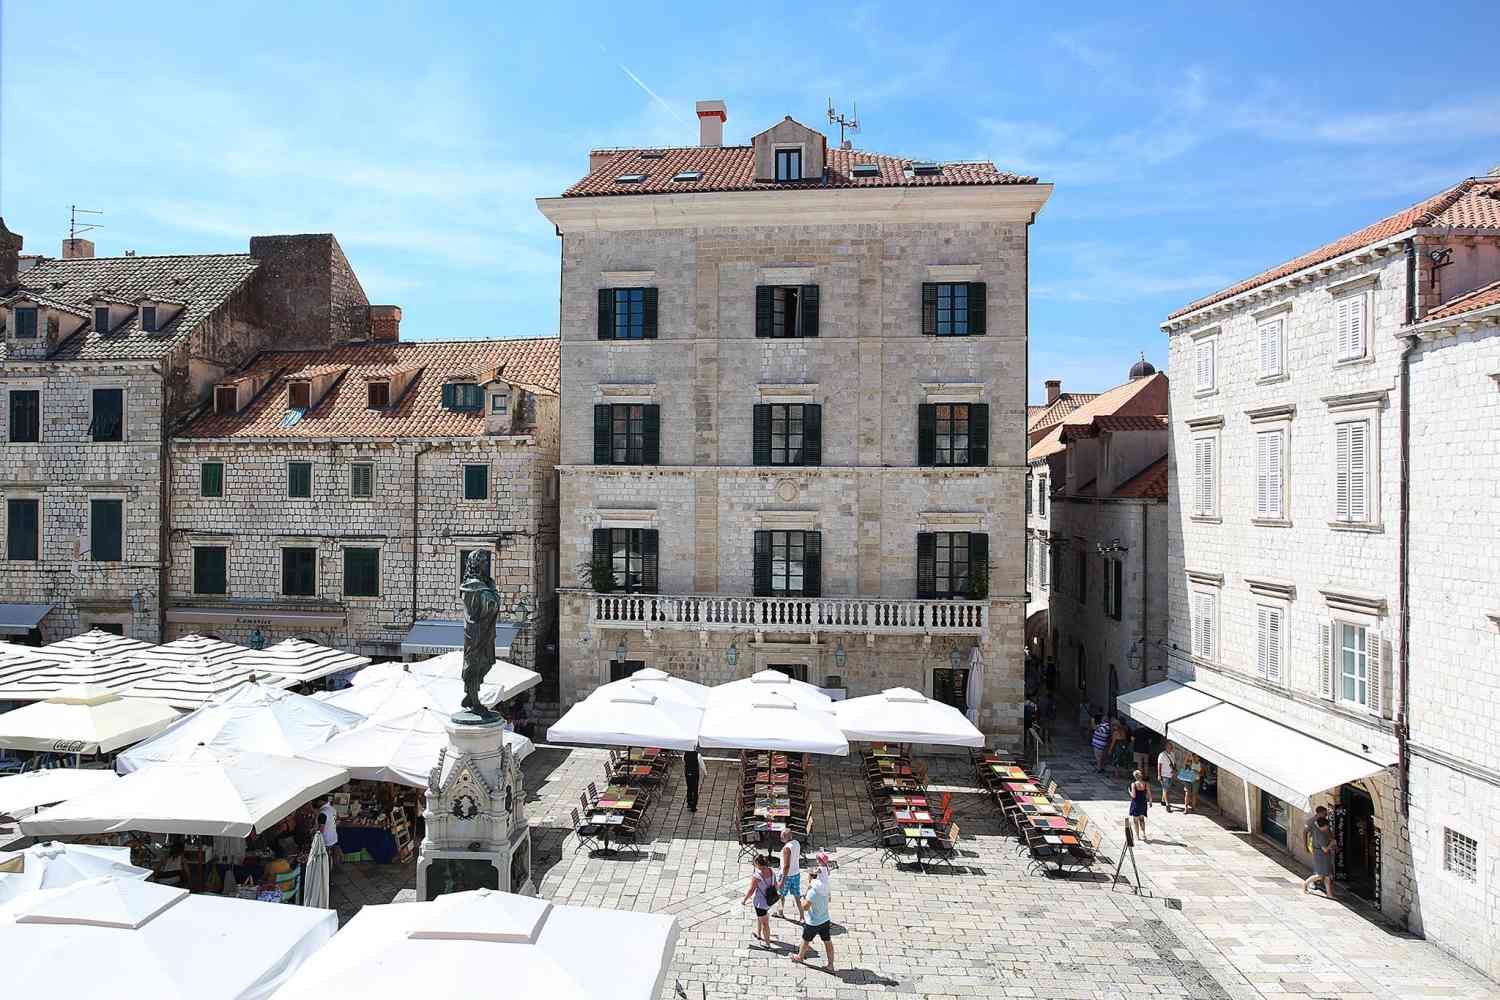 The Pucic Palace Dubrovnik, Dalmatia - Croatia